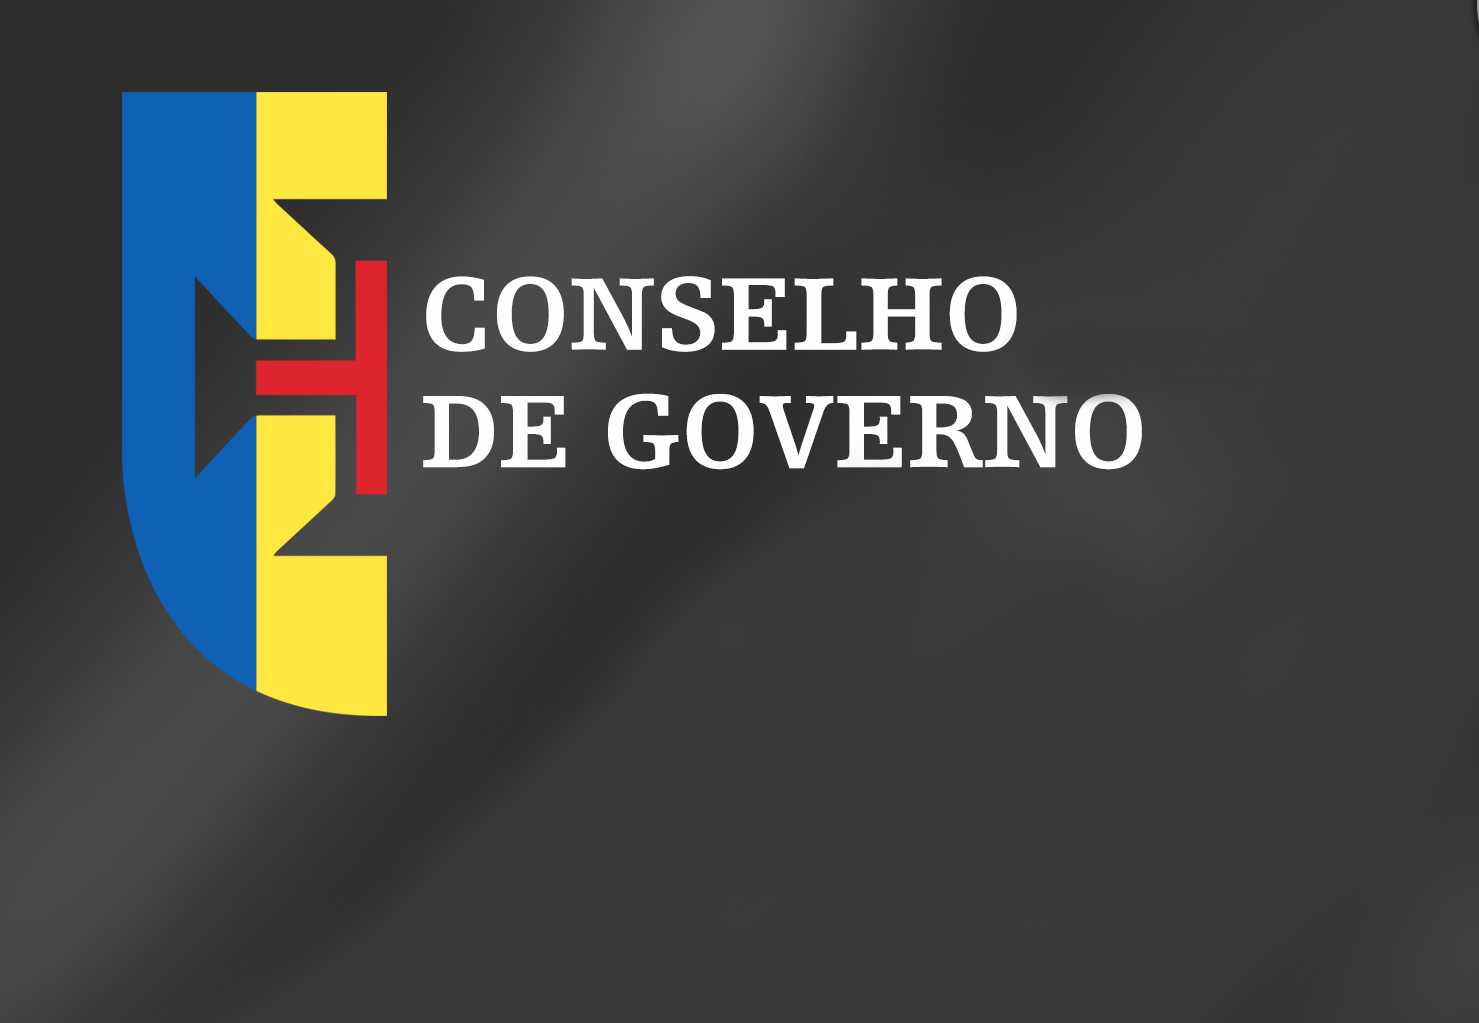 Conclusões Conselho de Governo - 25 de agosto de 2016